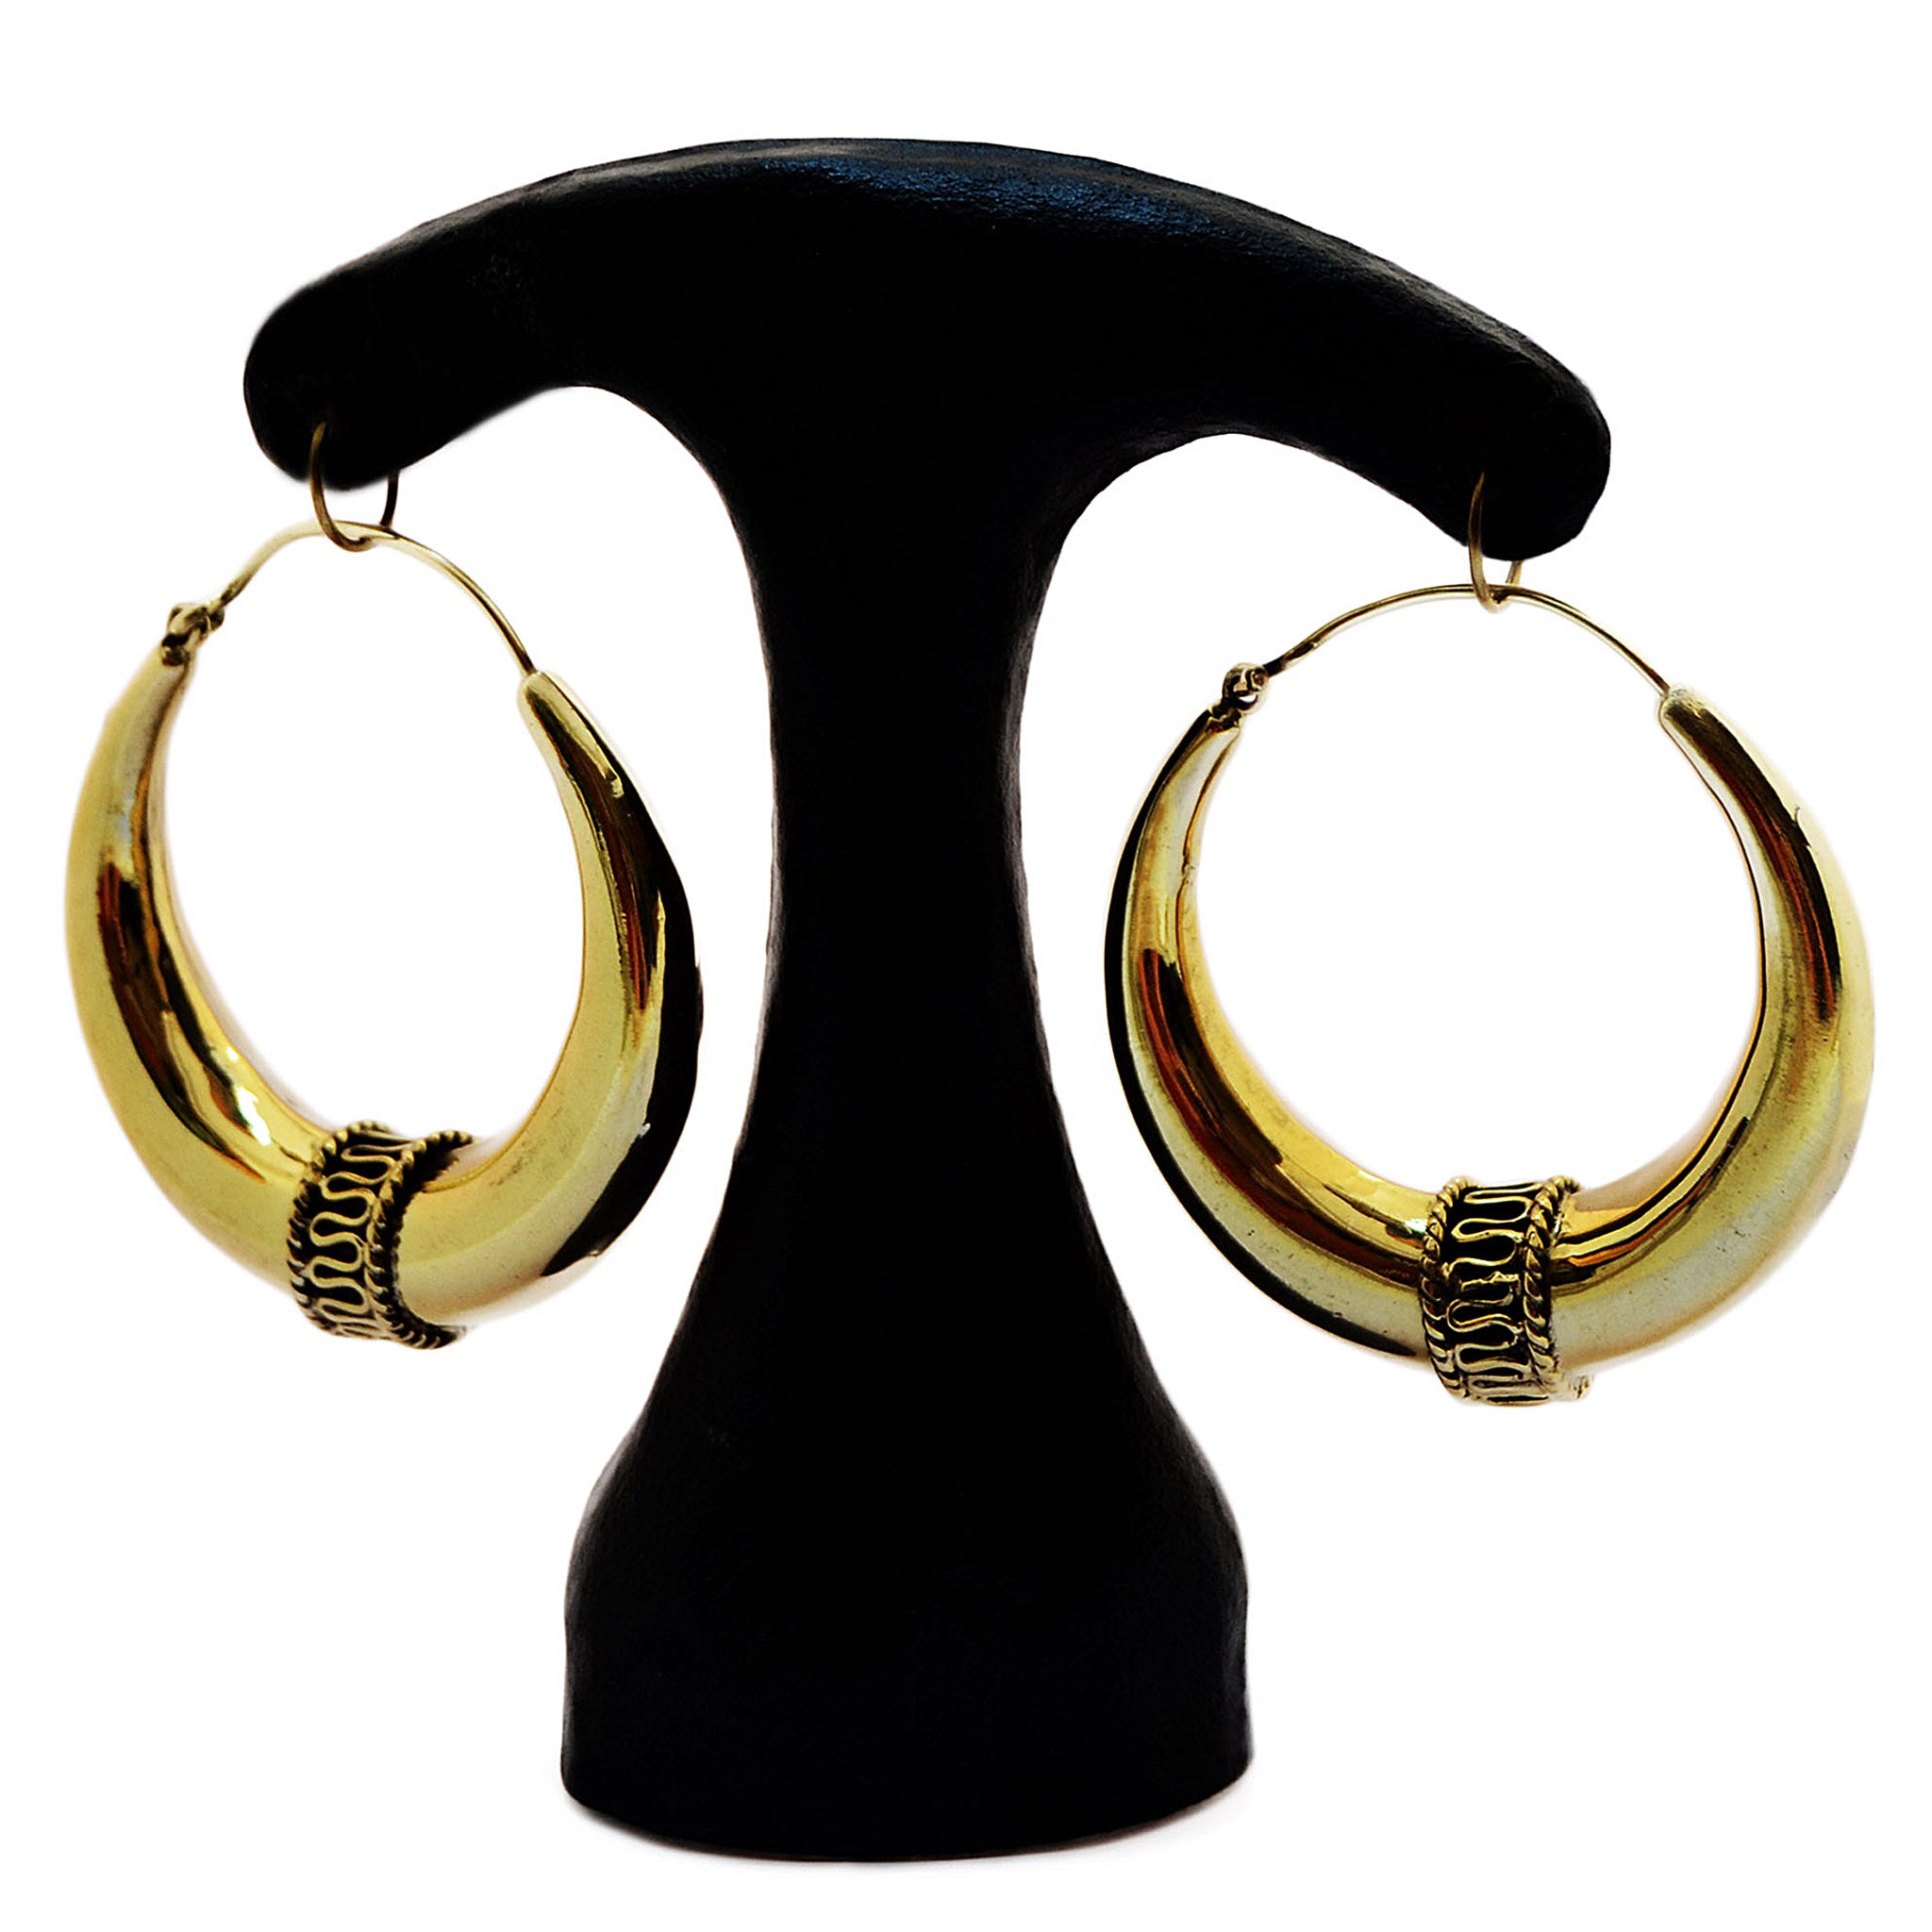 Ornate hoop earrings